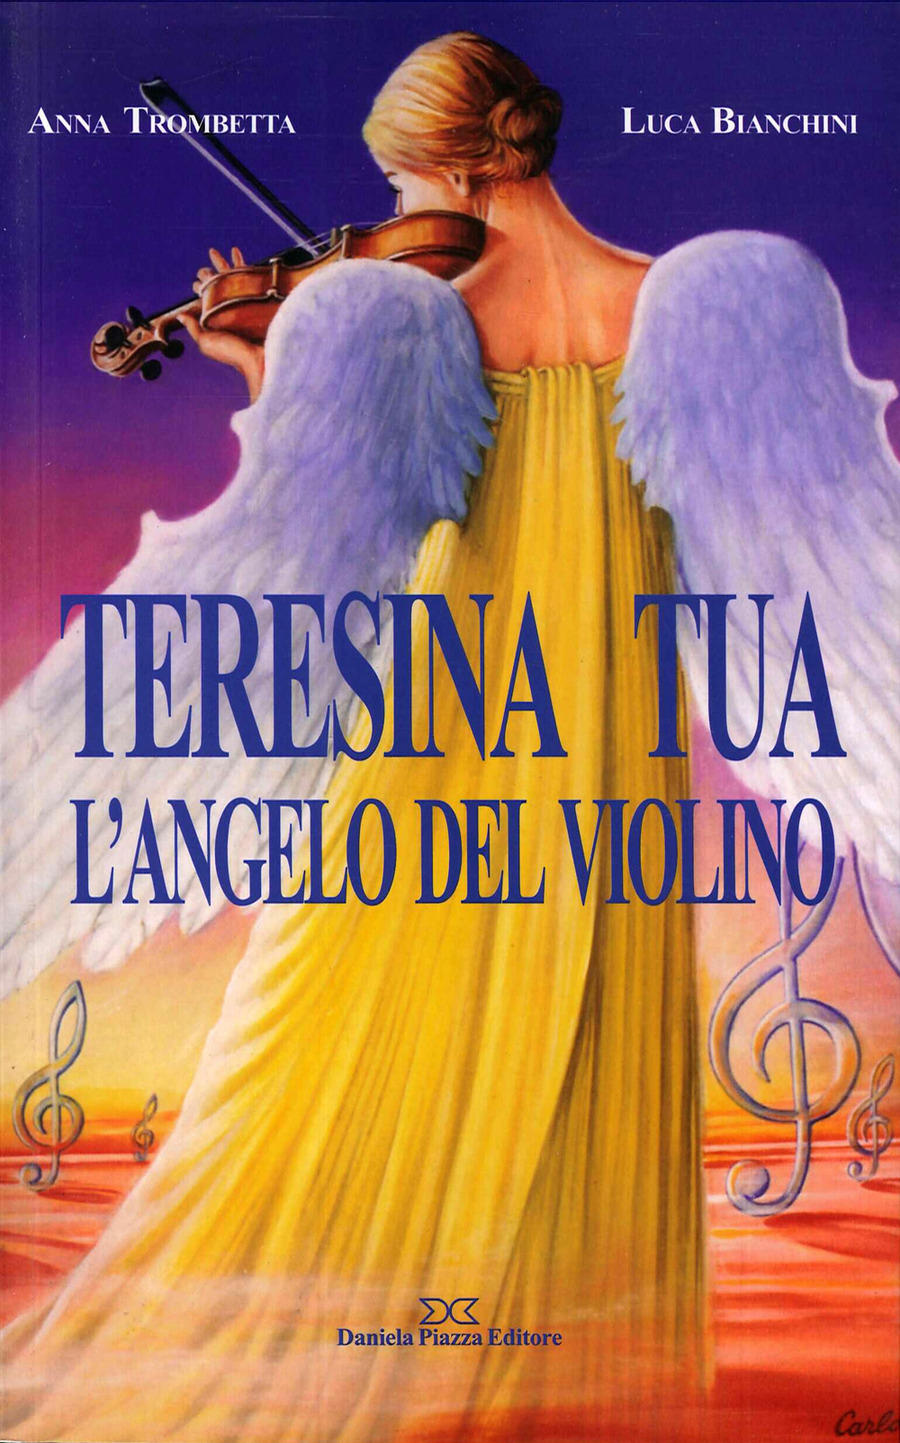 Teresina Tua, l'angelo del violino